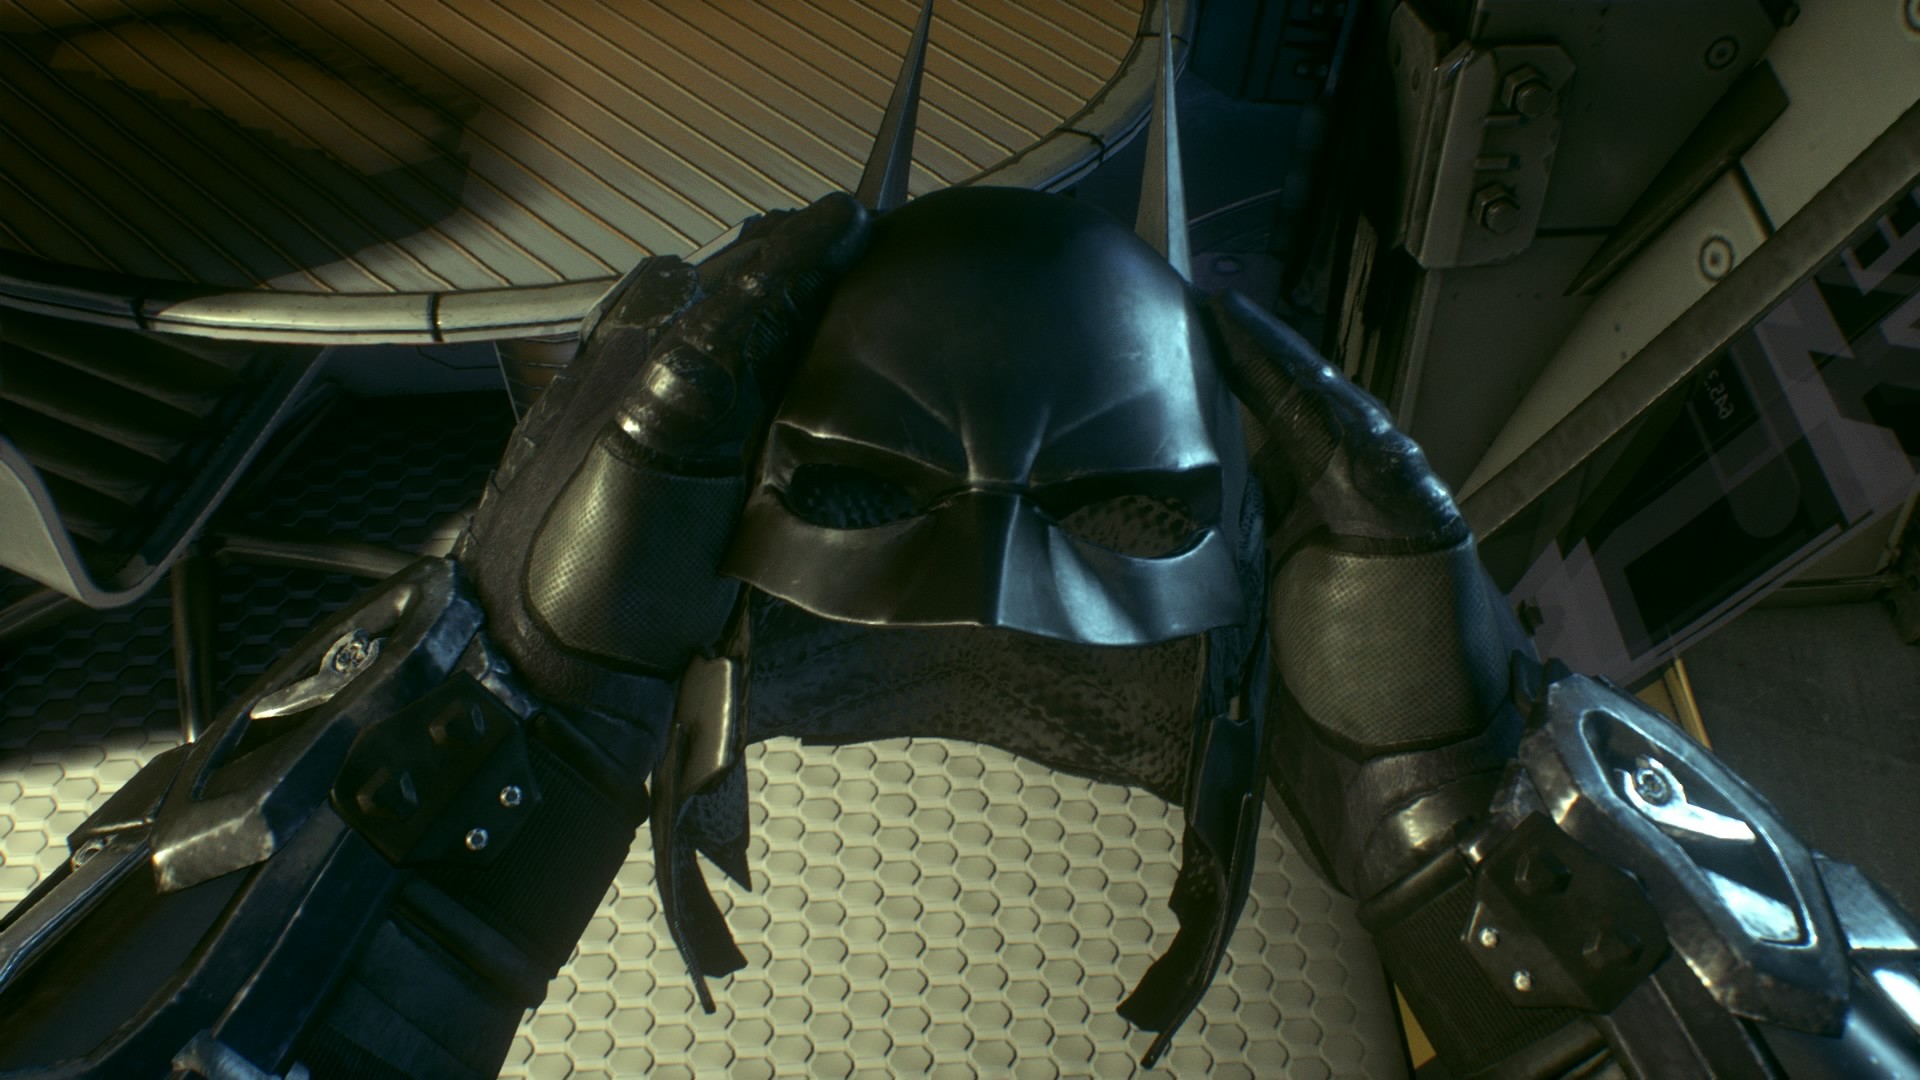 General 1920x1080 Batman Batman: Arkham Knight mask video games screen shot superhero DC Comics Rockstar Games